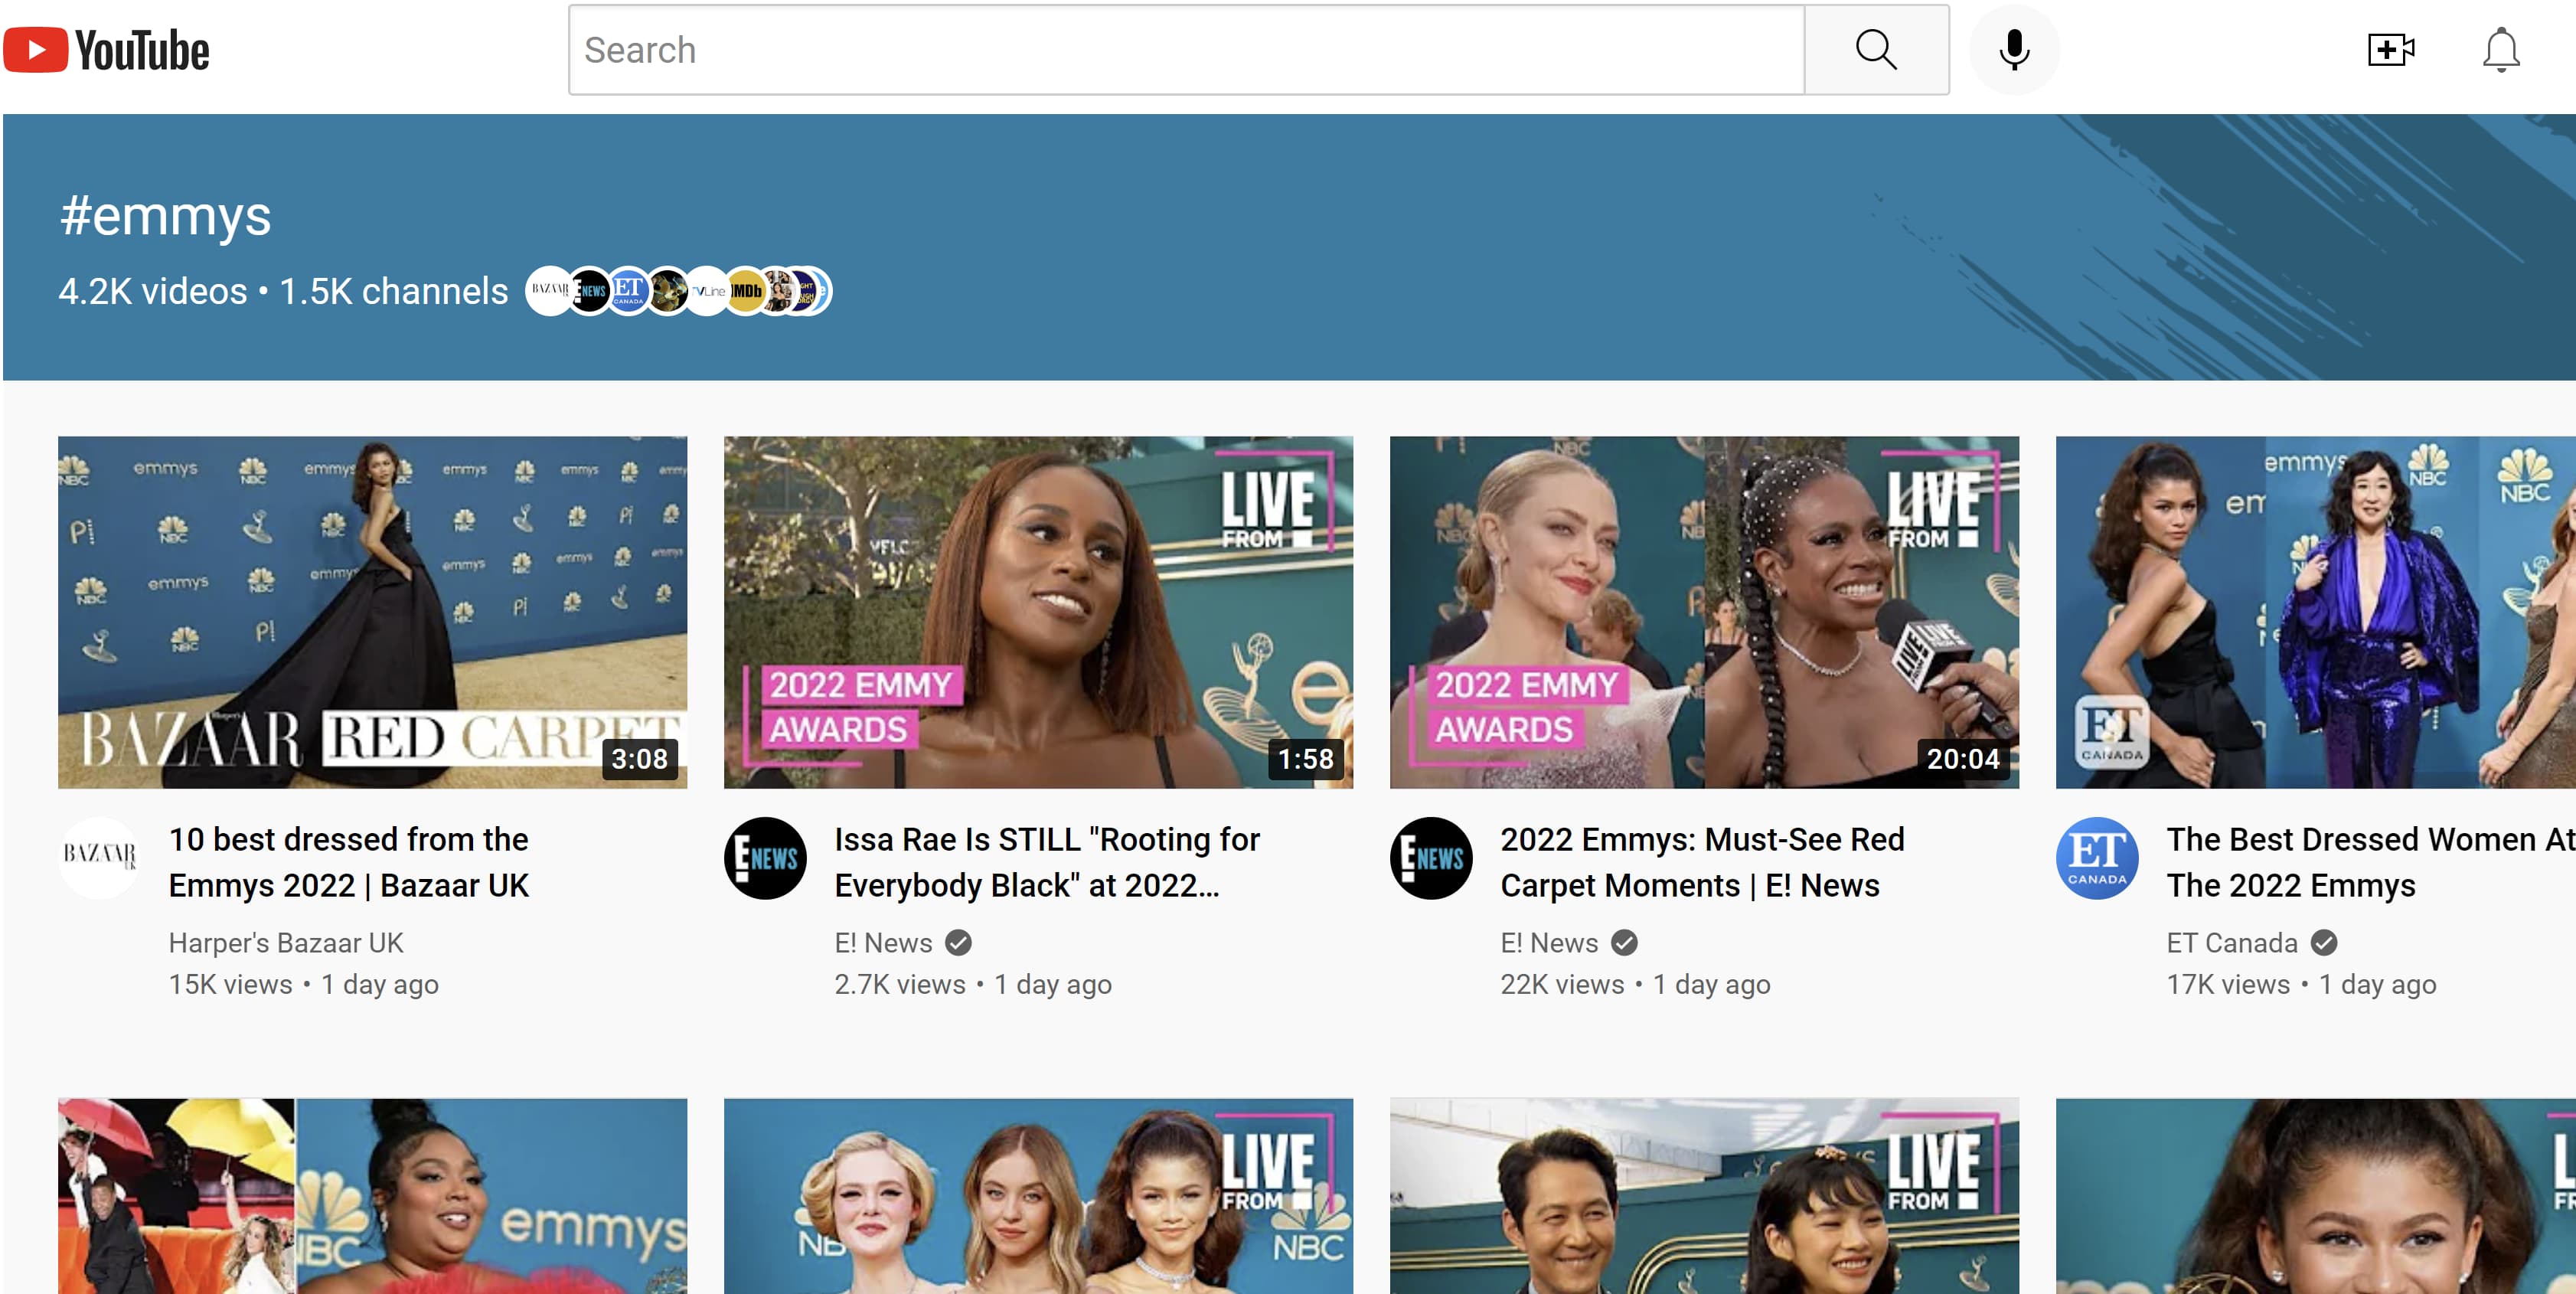 هشتگ #Emmys کاربران را با استفاده از همین هشتگ به صفحه ای پر از ویدیوهای دیگر می برد